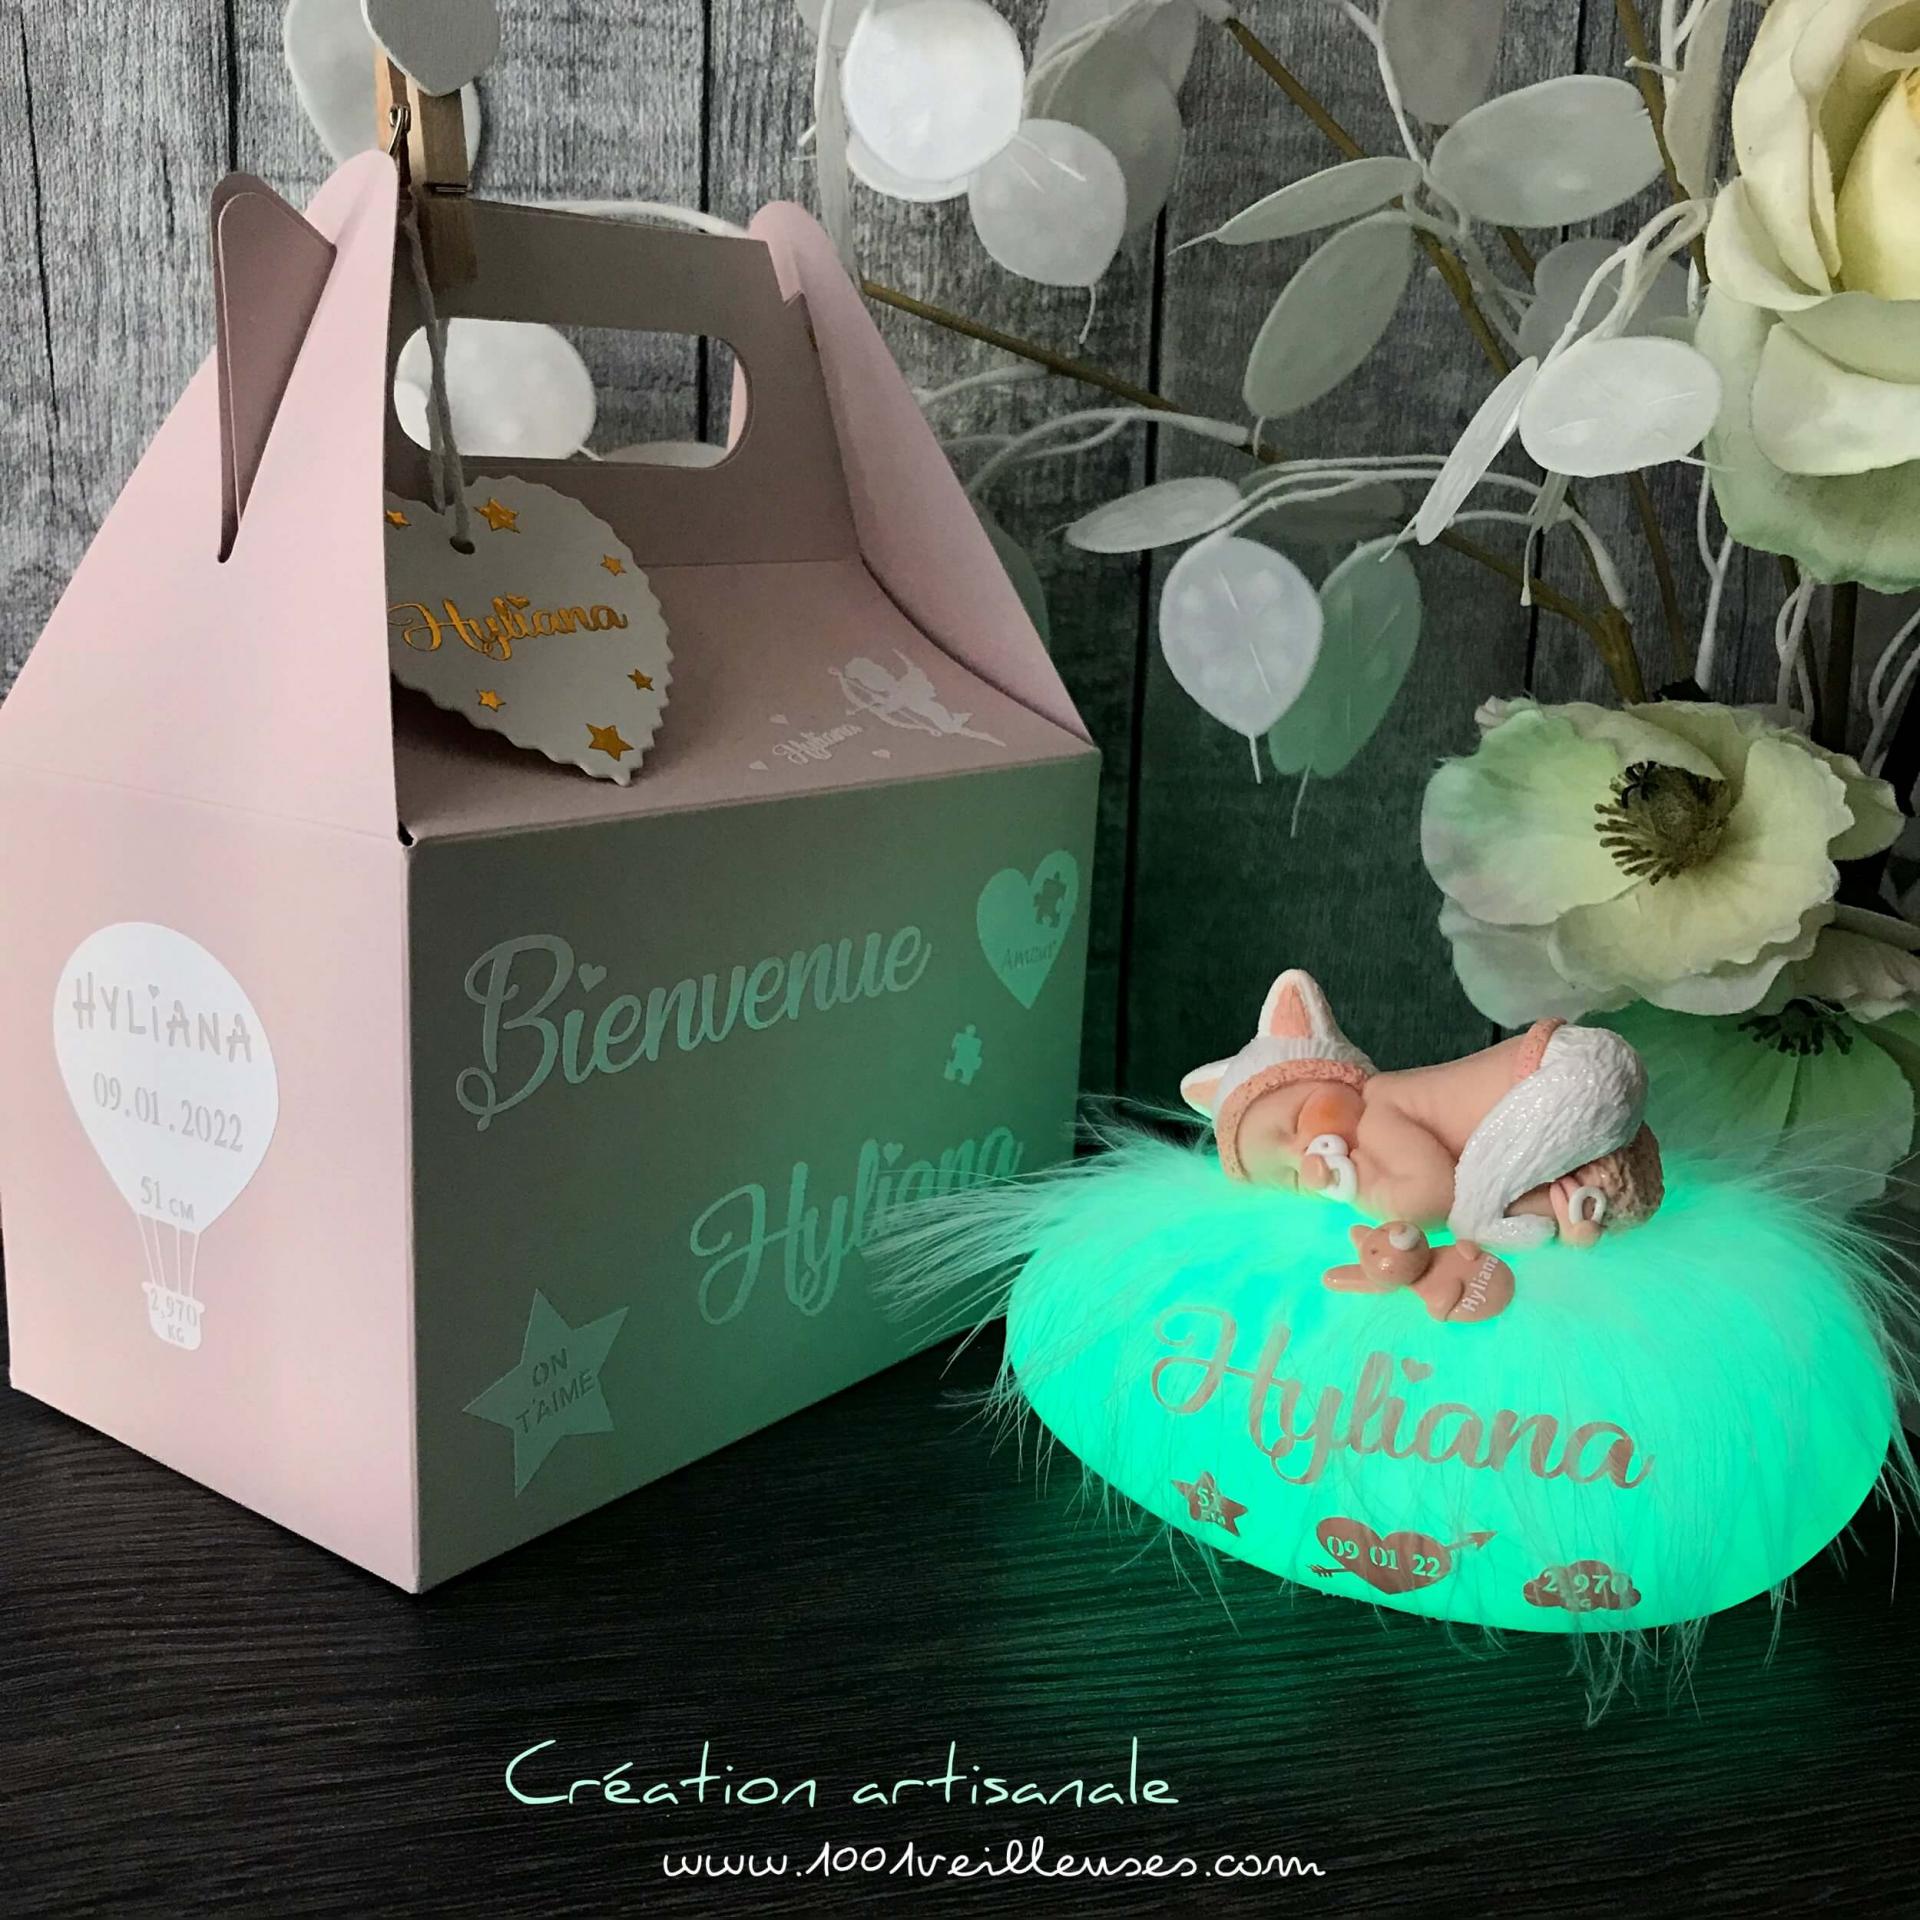 Lámpara de noche hecha a mano con un gatito bebé de fimo disfrazado de gato, con su caja de regalo personalizable con el nombre del niño/a, vista en ángulo